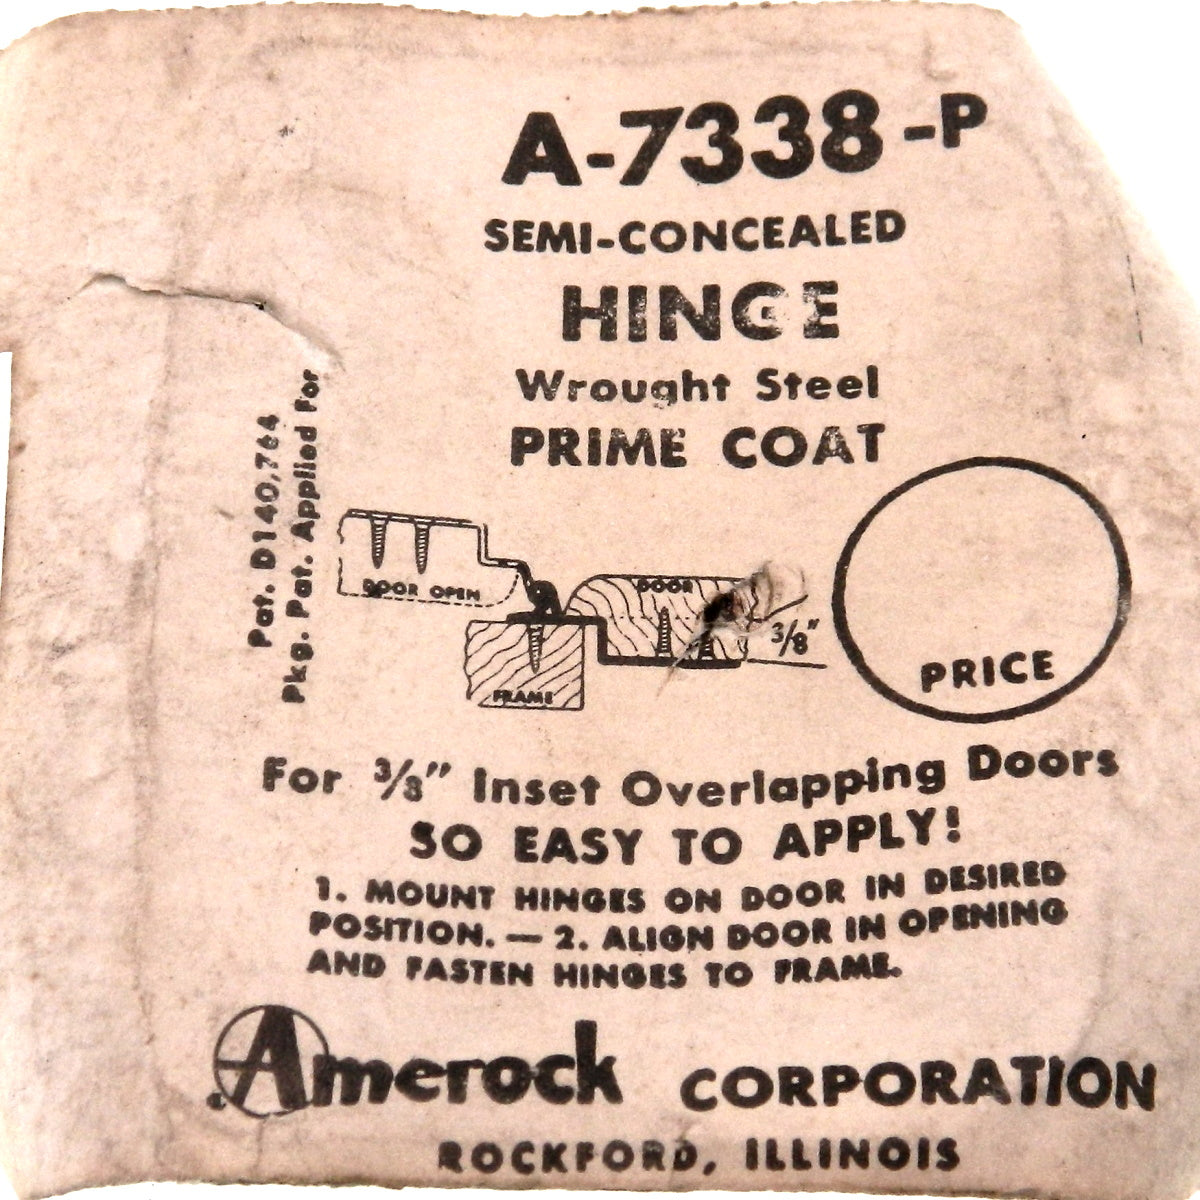 Pair of Amerock Prime Coat 3/8" Inset Hinges Non Self-Closing BP7338-P